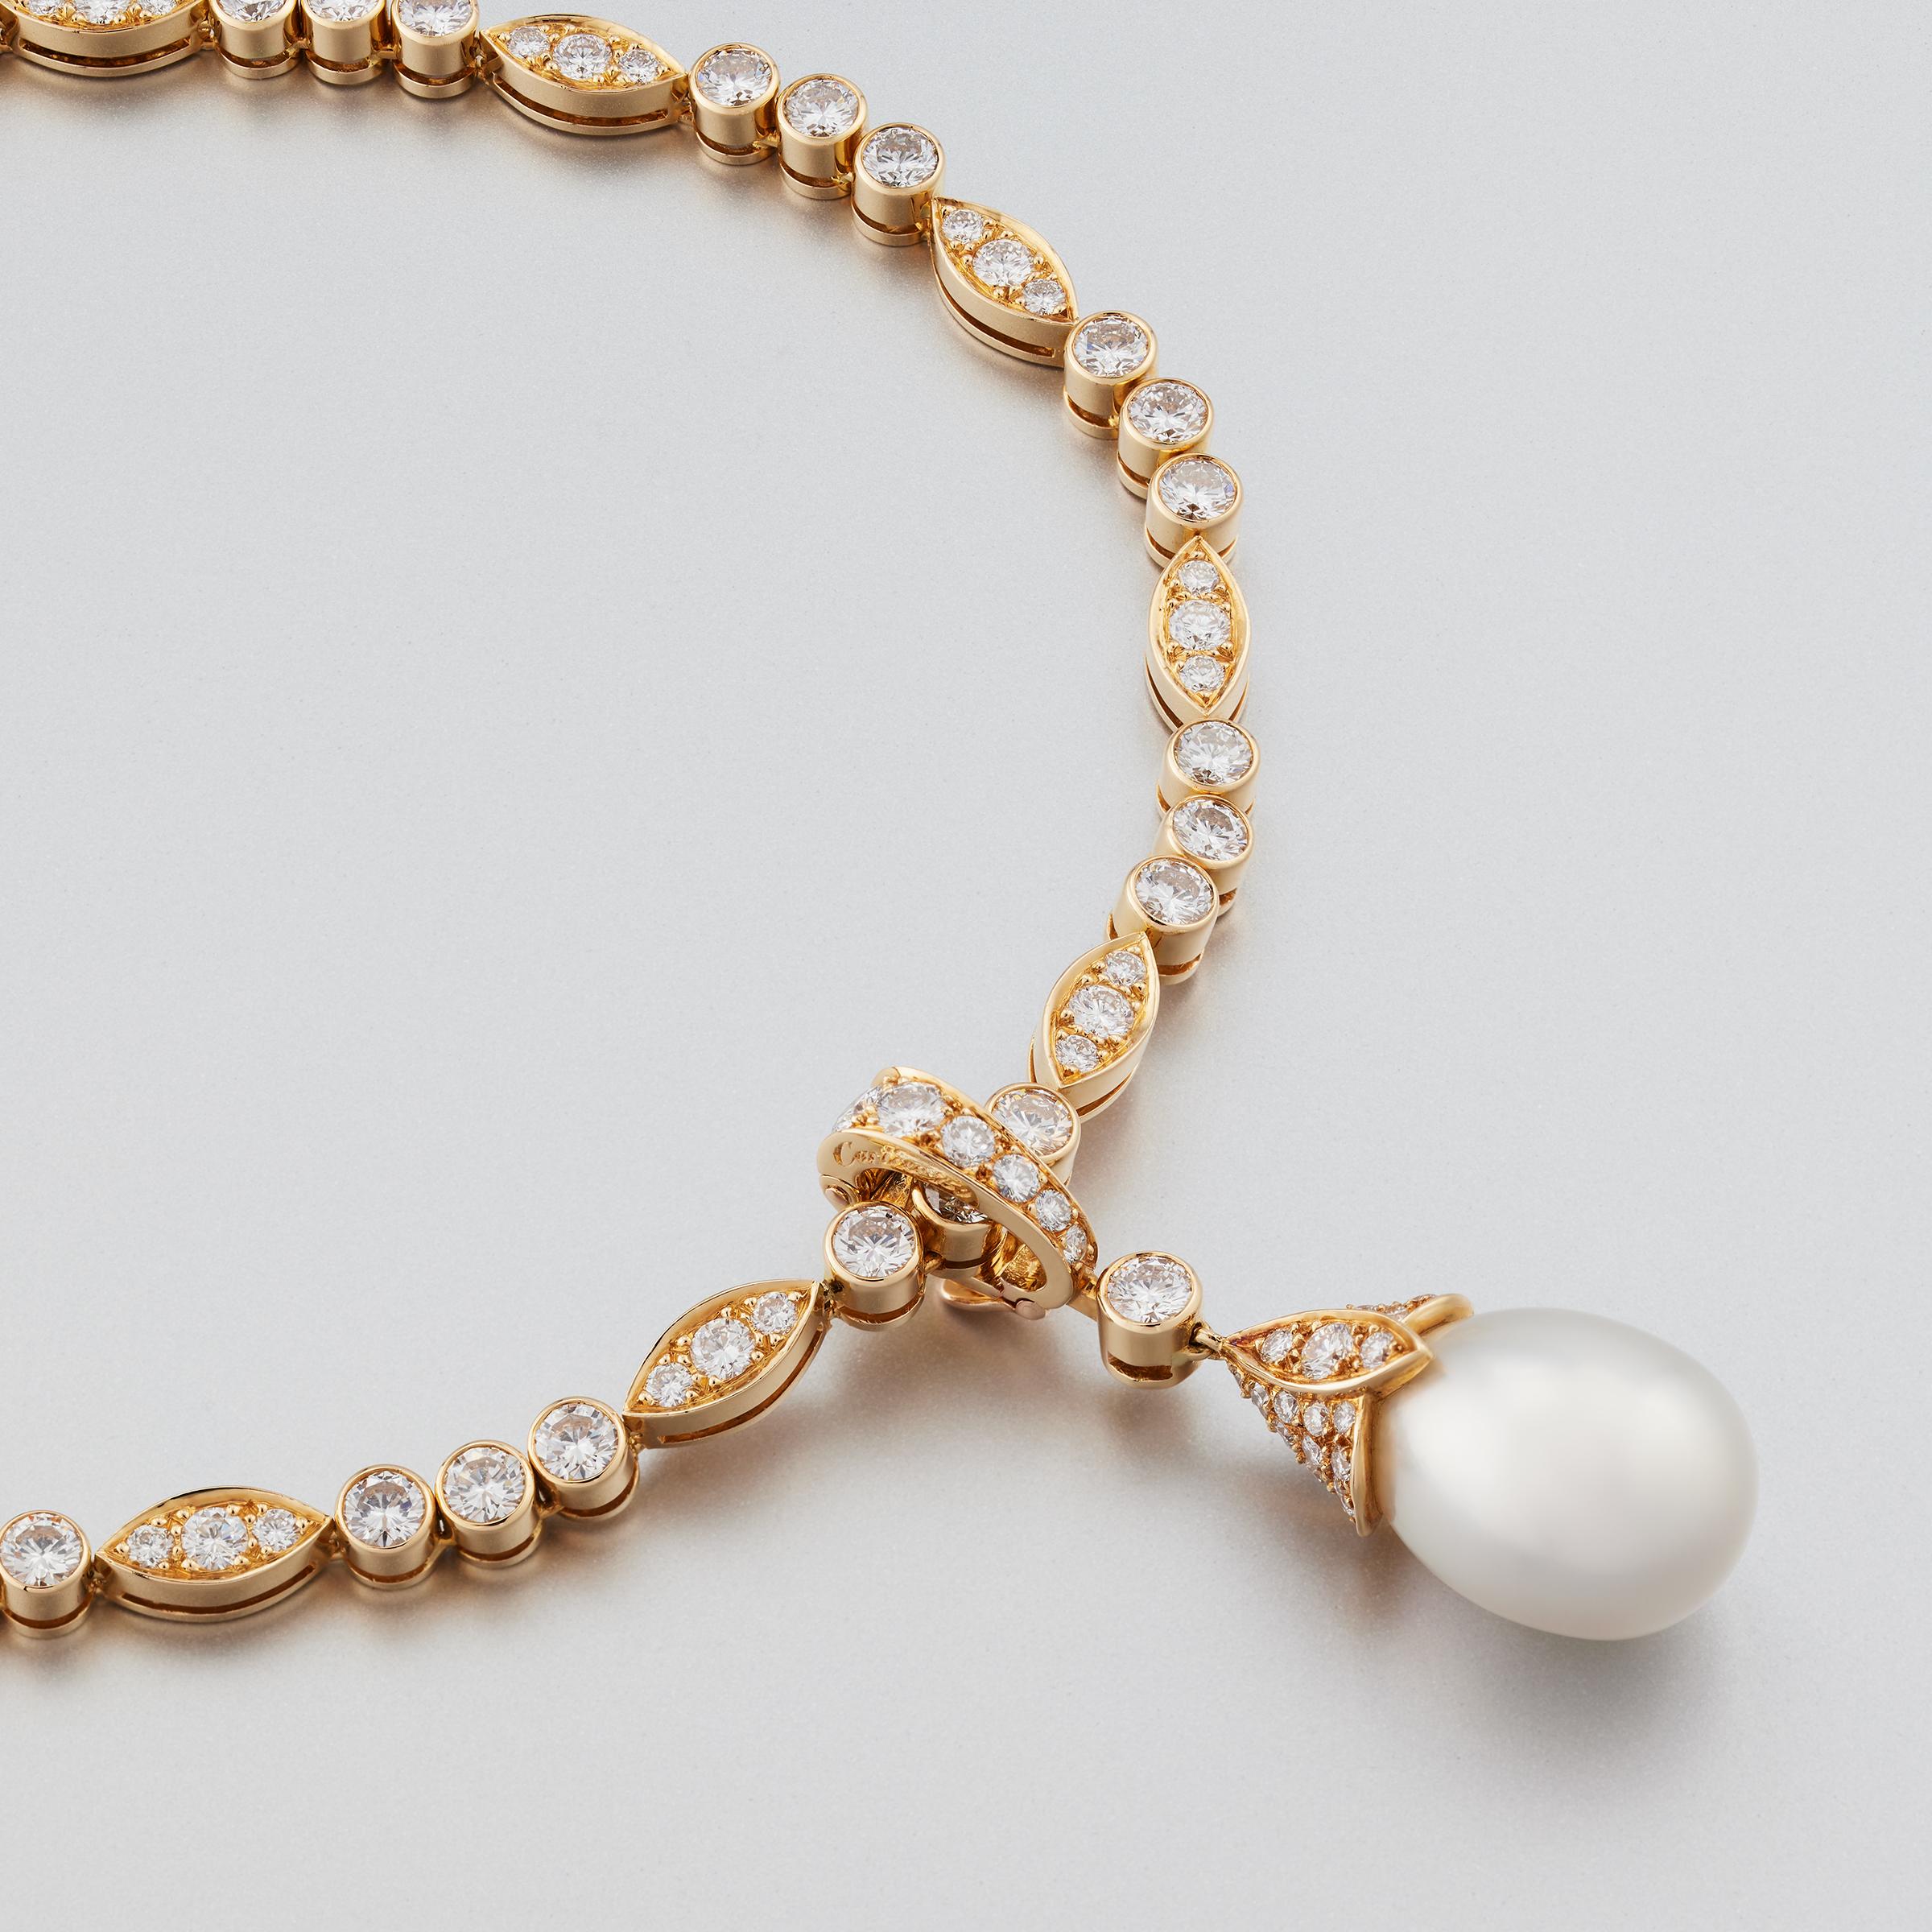 Außergewöhnliches Collier aus der Cartier Paris Diamantlinie mit einem abnehmbaren großen Perlen- und Diamantanhänger. Die Halskette und der Anhänger sind mit ca. 12 Karat feinster Diamanten (Farbe E-F und Reinheit VVS) in einer aufwendigen Fassung